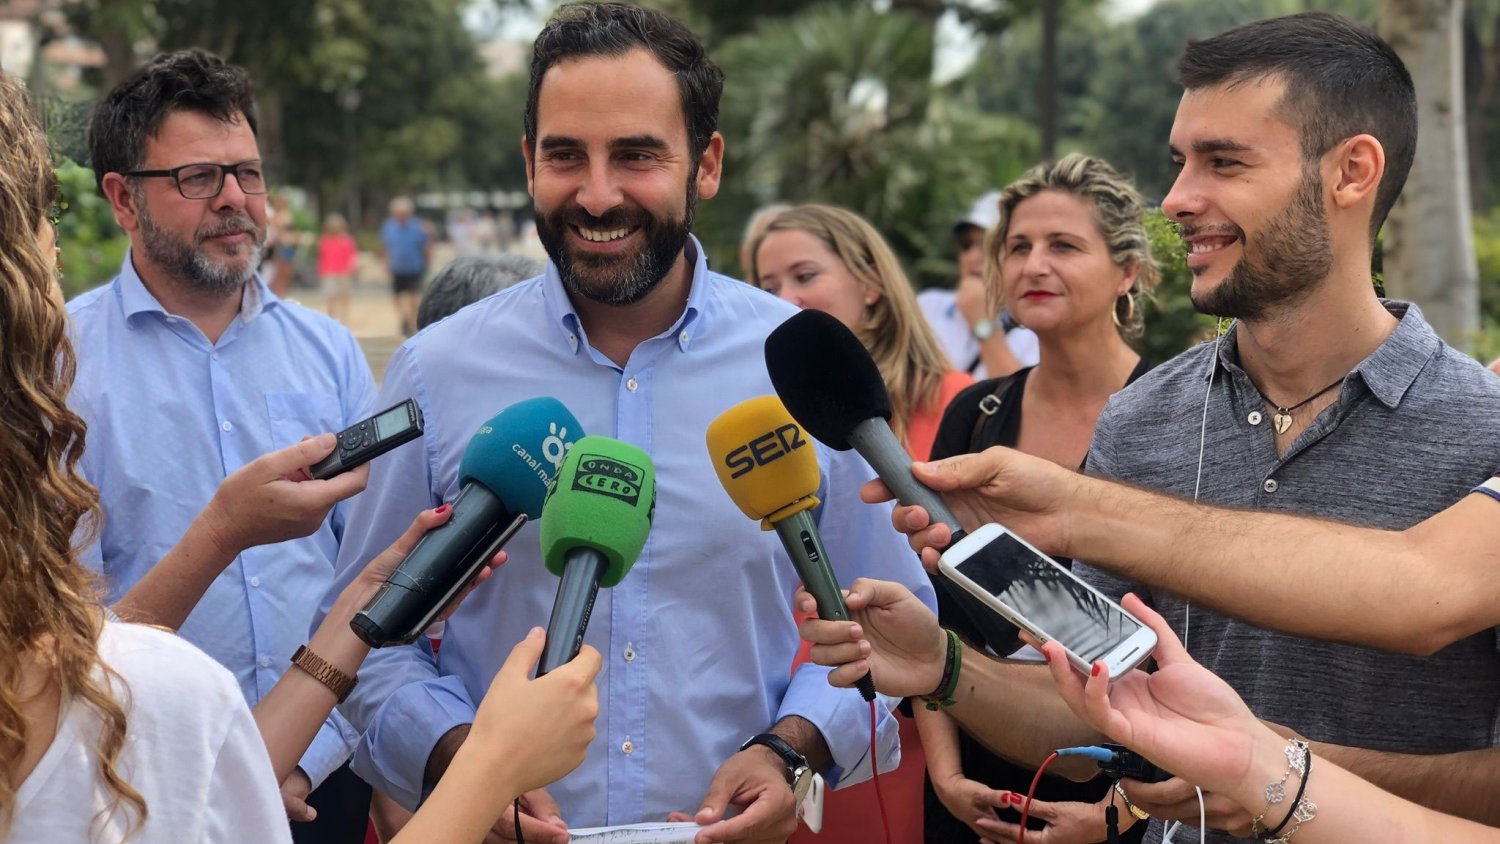 PSOE concederá el XIII Premio Liderazgo Social a los vecinos de El Perchel y a Salvador Pérez 